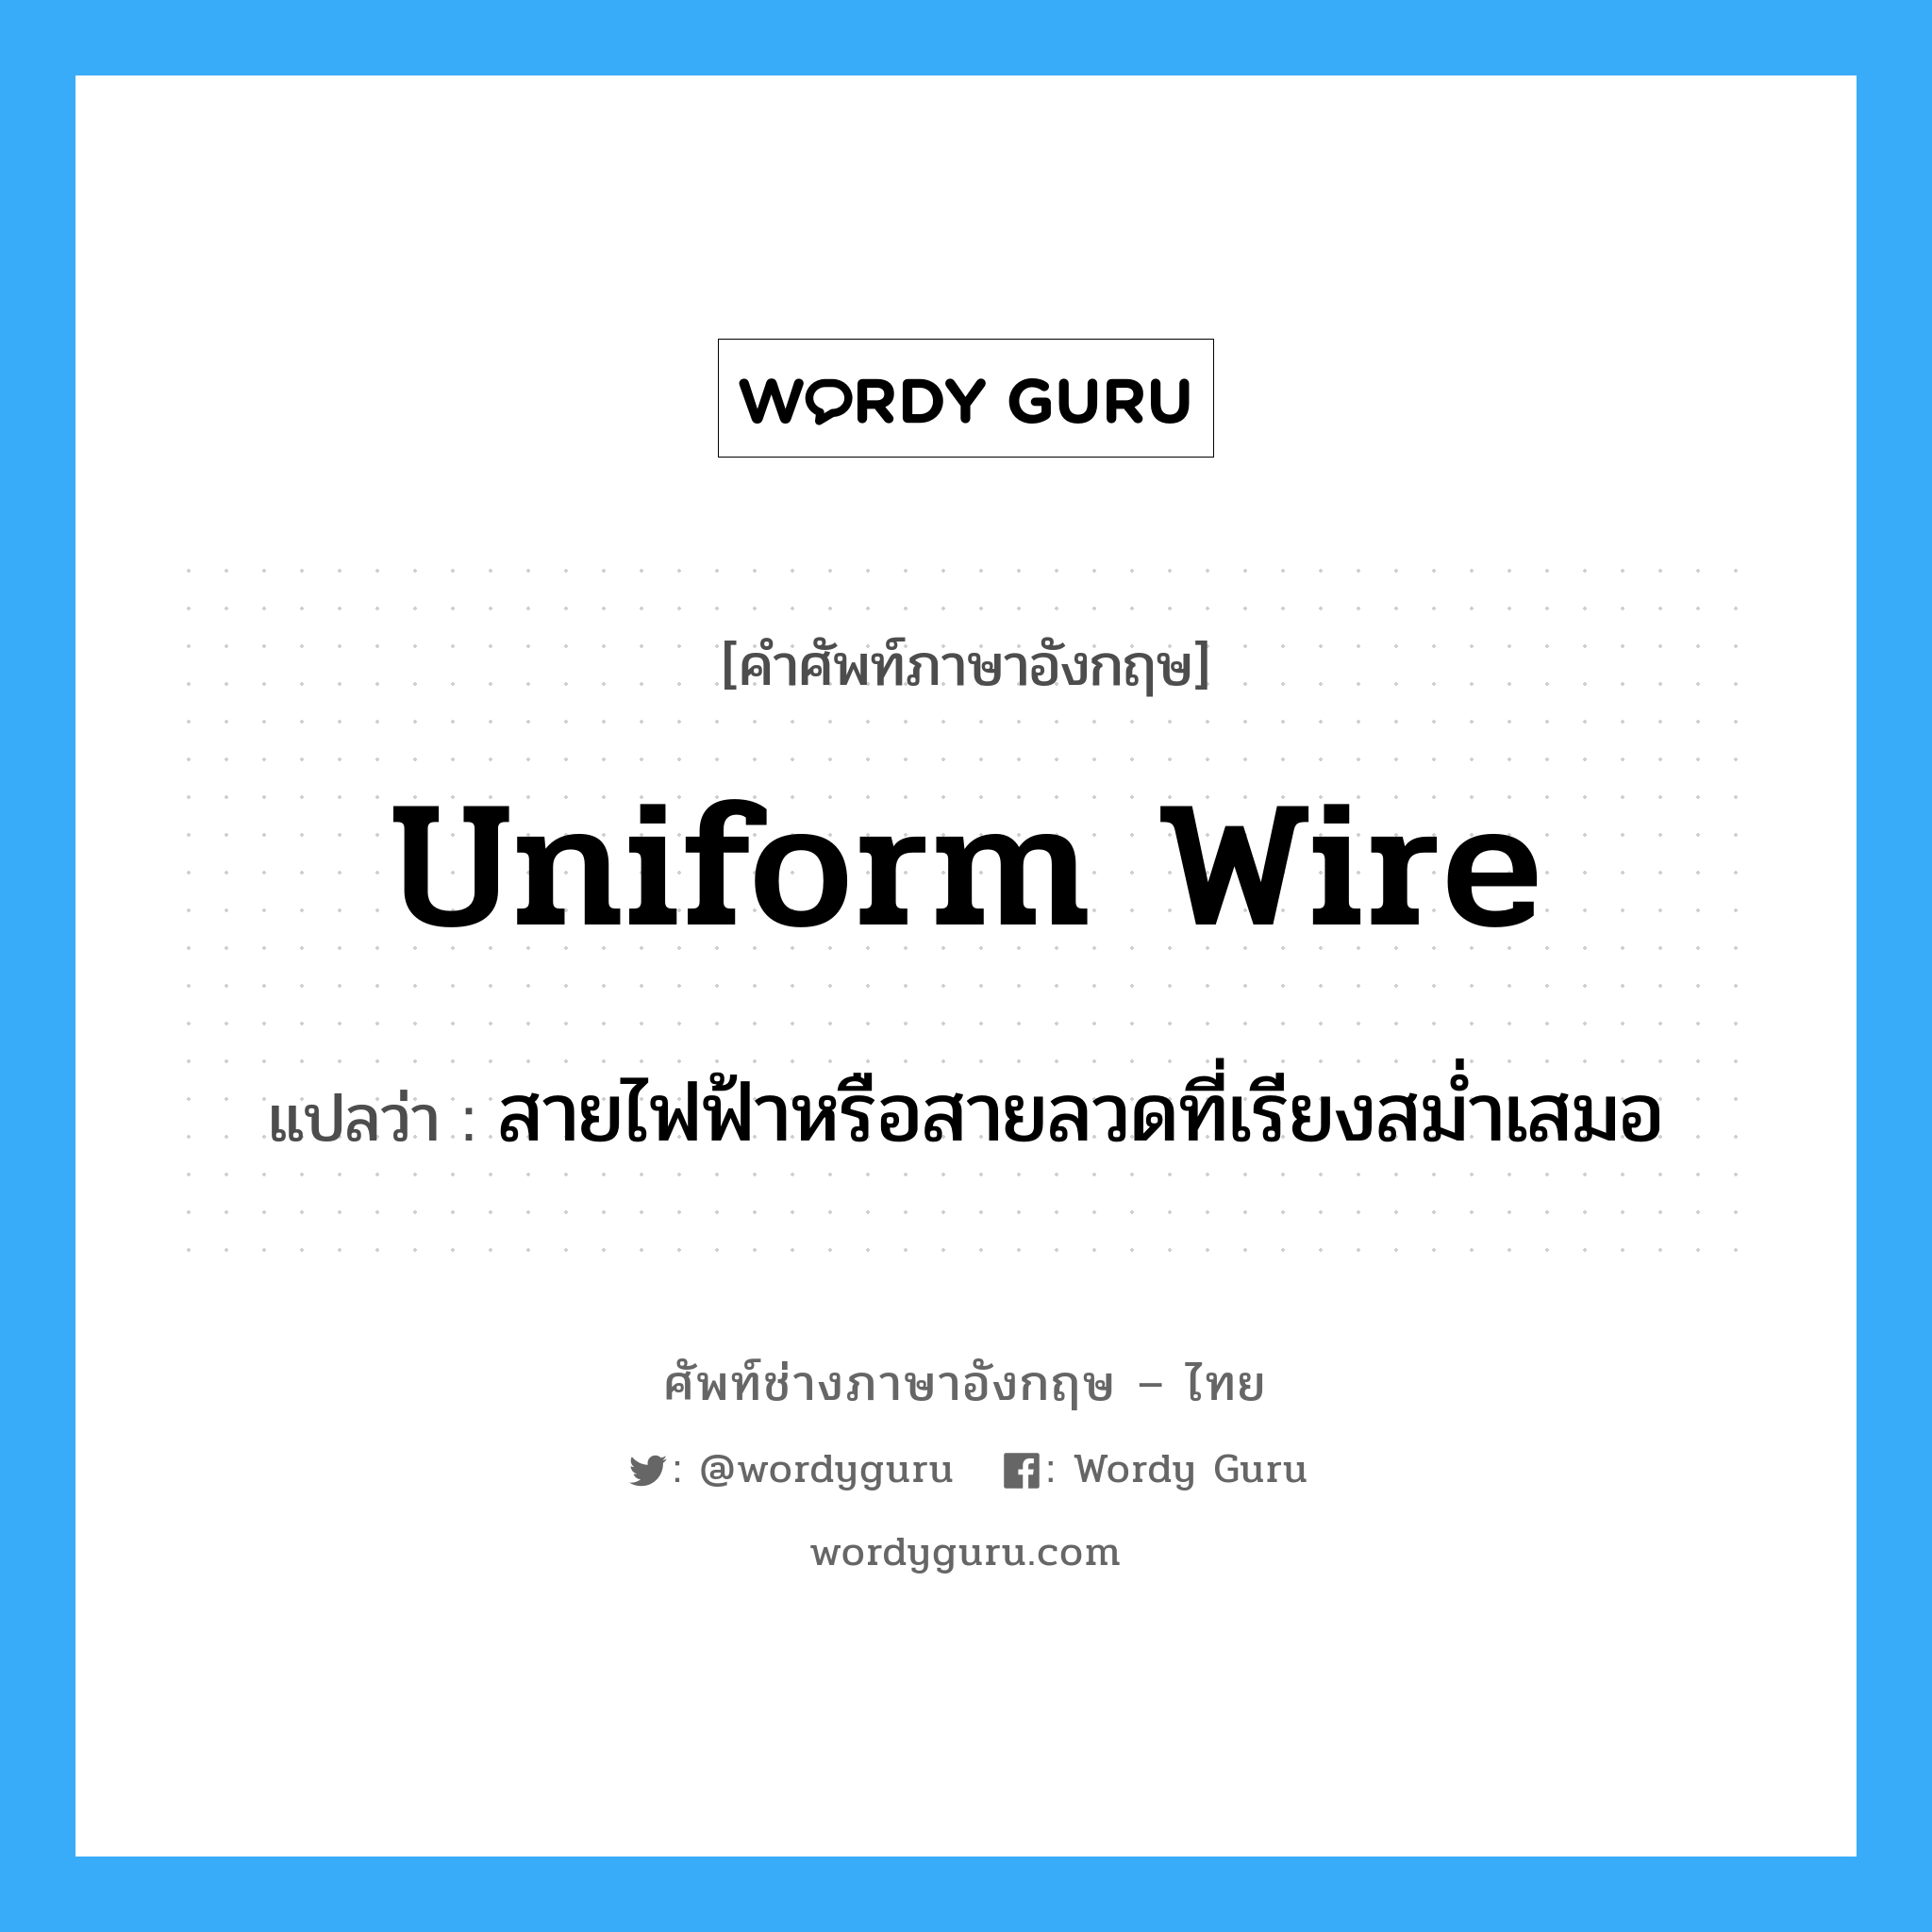 uniform wire แปลว่า?, คำศัพท์ช่างภาษาอังกฤษ - ไทย uniform wire คำศัพท์ภาษาอังกฤษ uniform wire แปลว่า สายไฟฟ้าหรือสายลวดที่เรียงสม่ำเสมอ